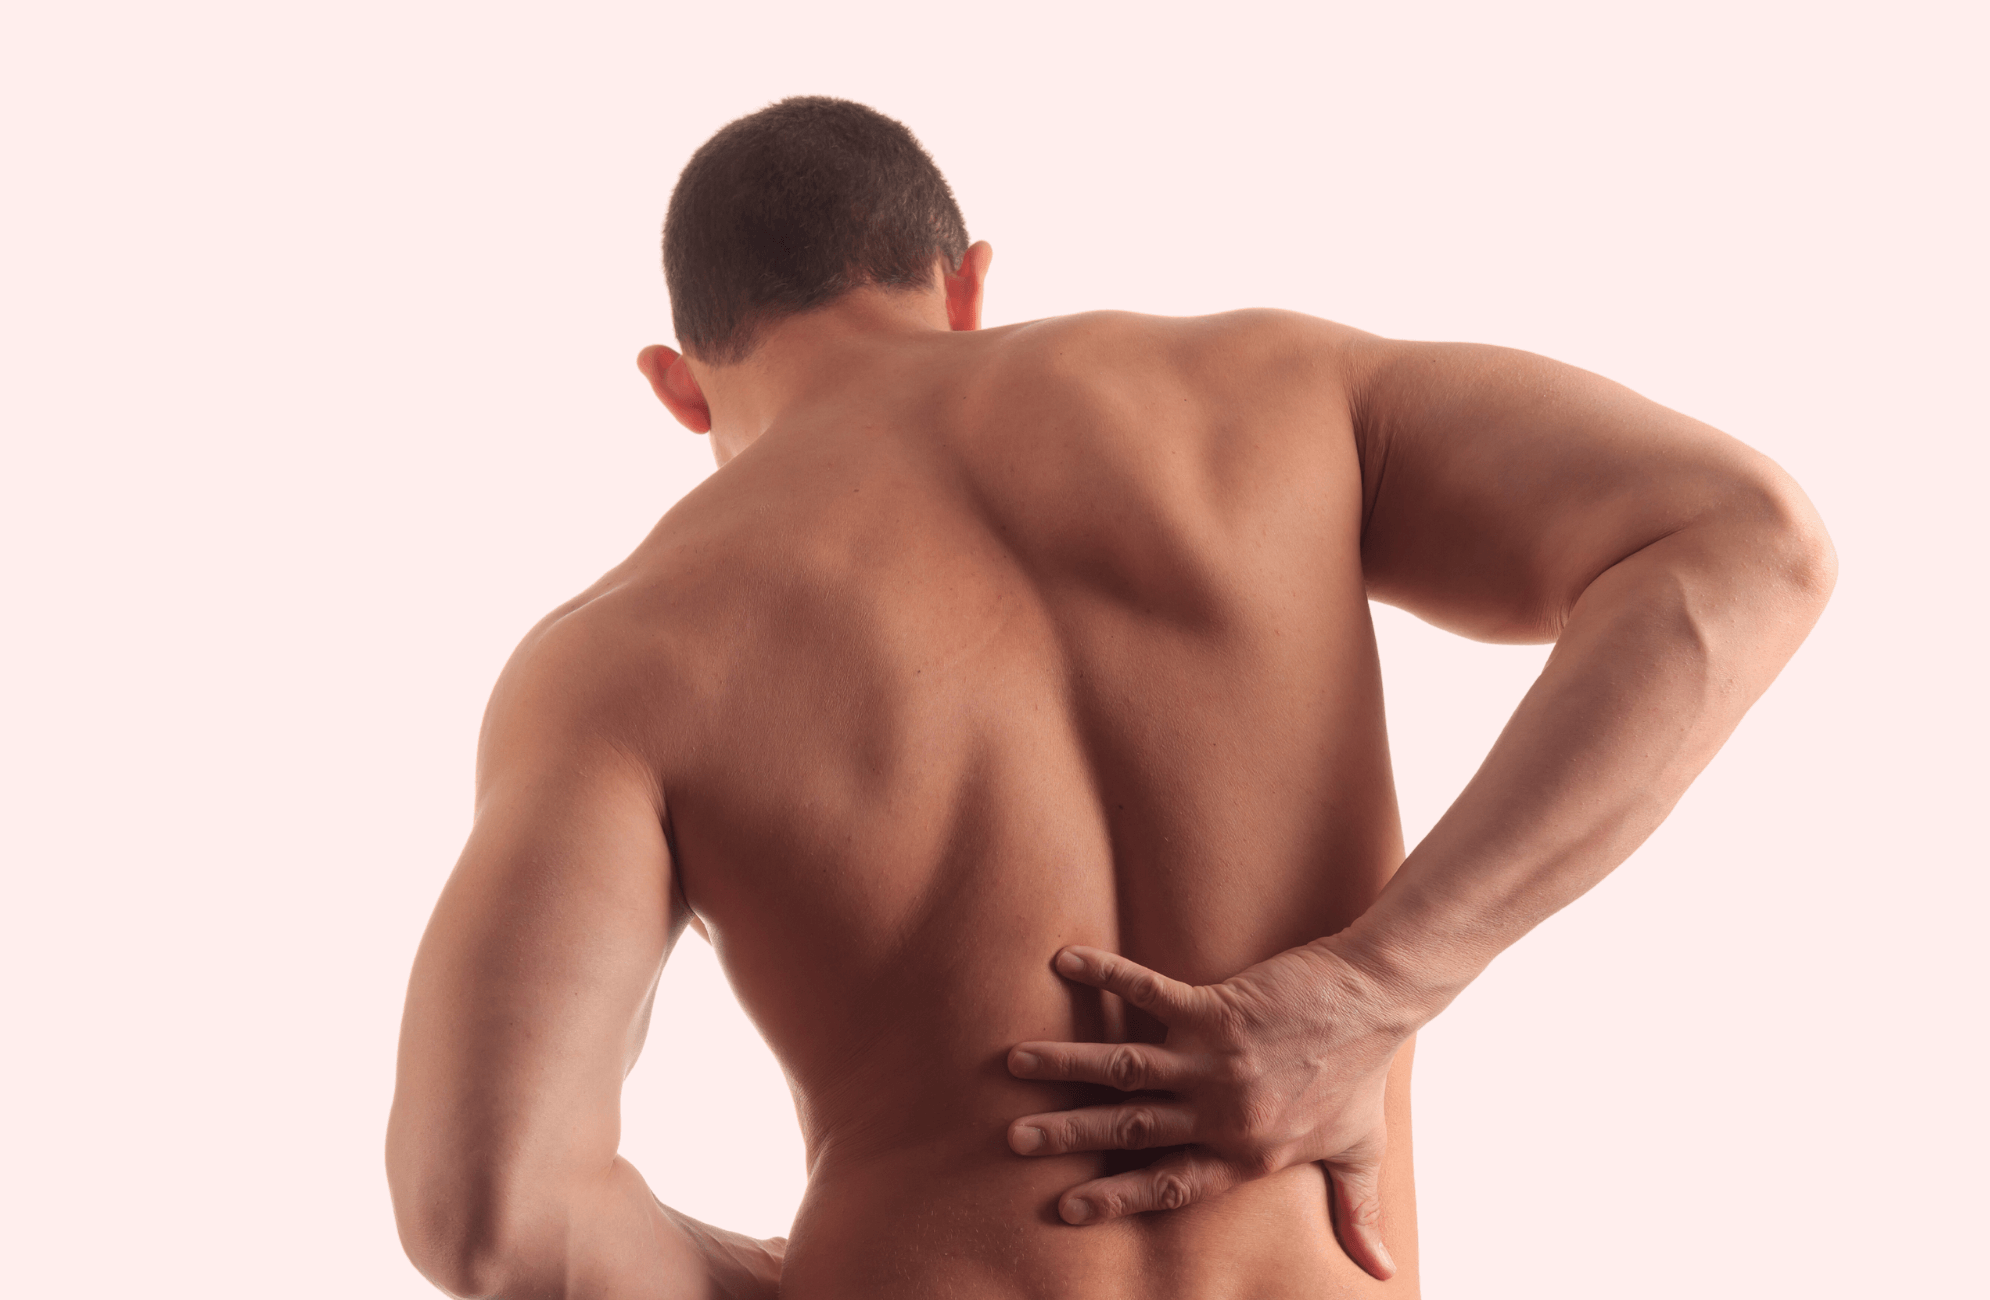 Mann mit nacktem Oberkörper fasst sich an den schmerzenden Rücken.